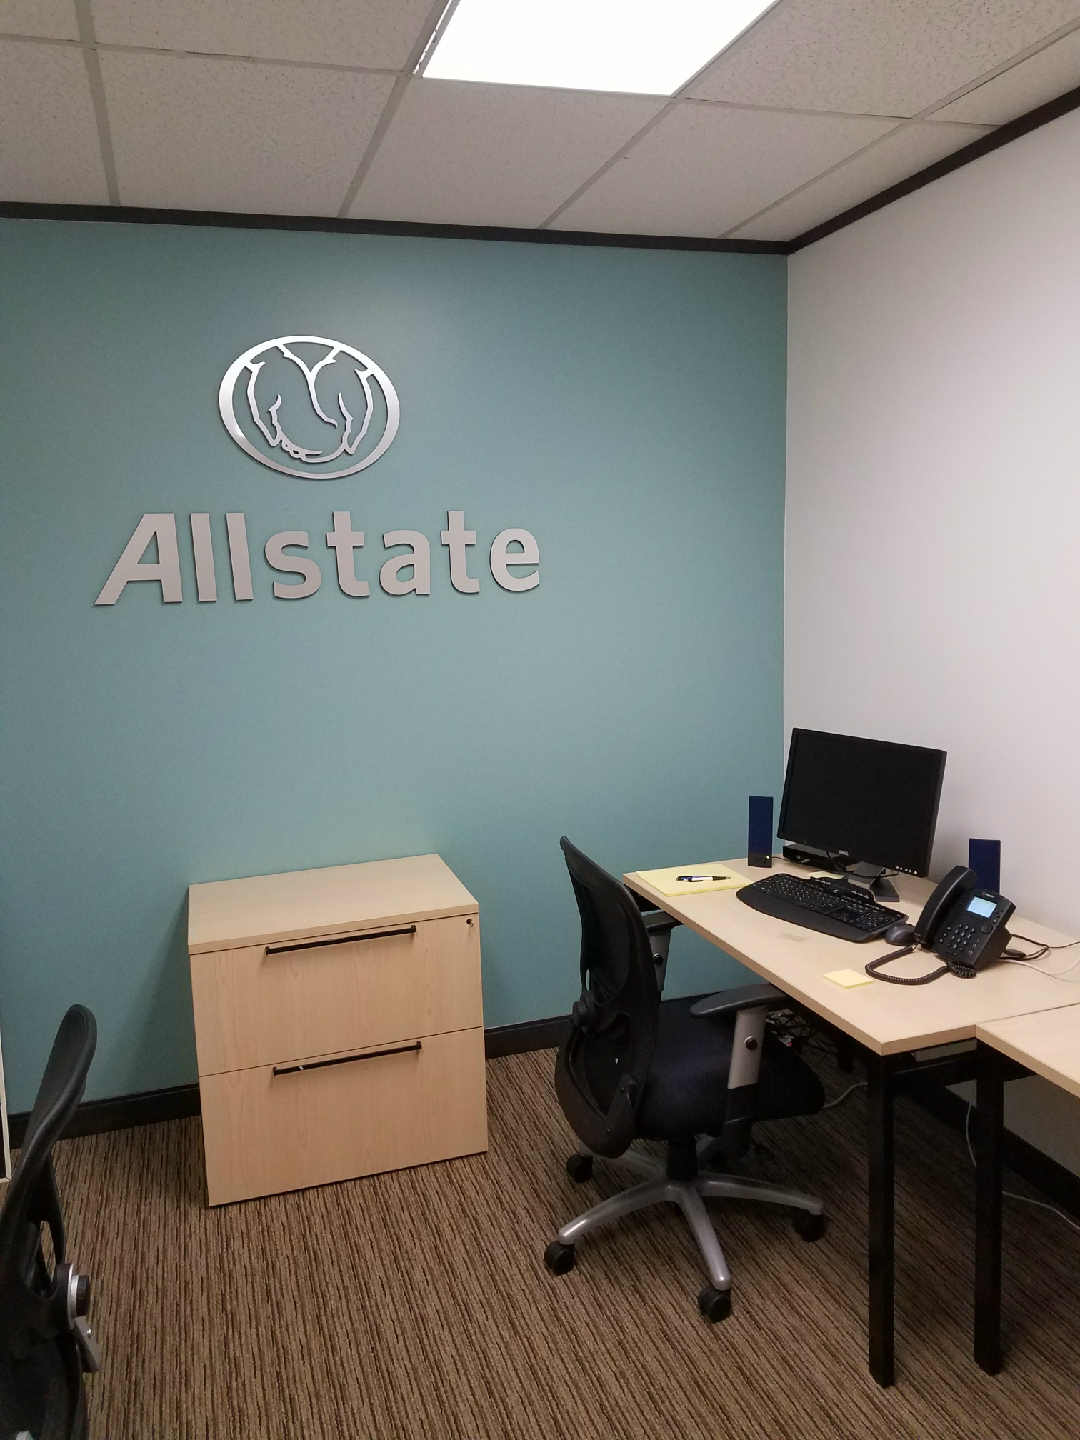 Sean Mertz: Allstate Insurance Photo